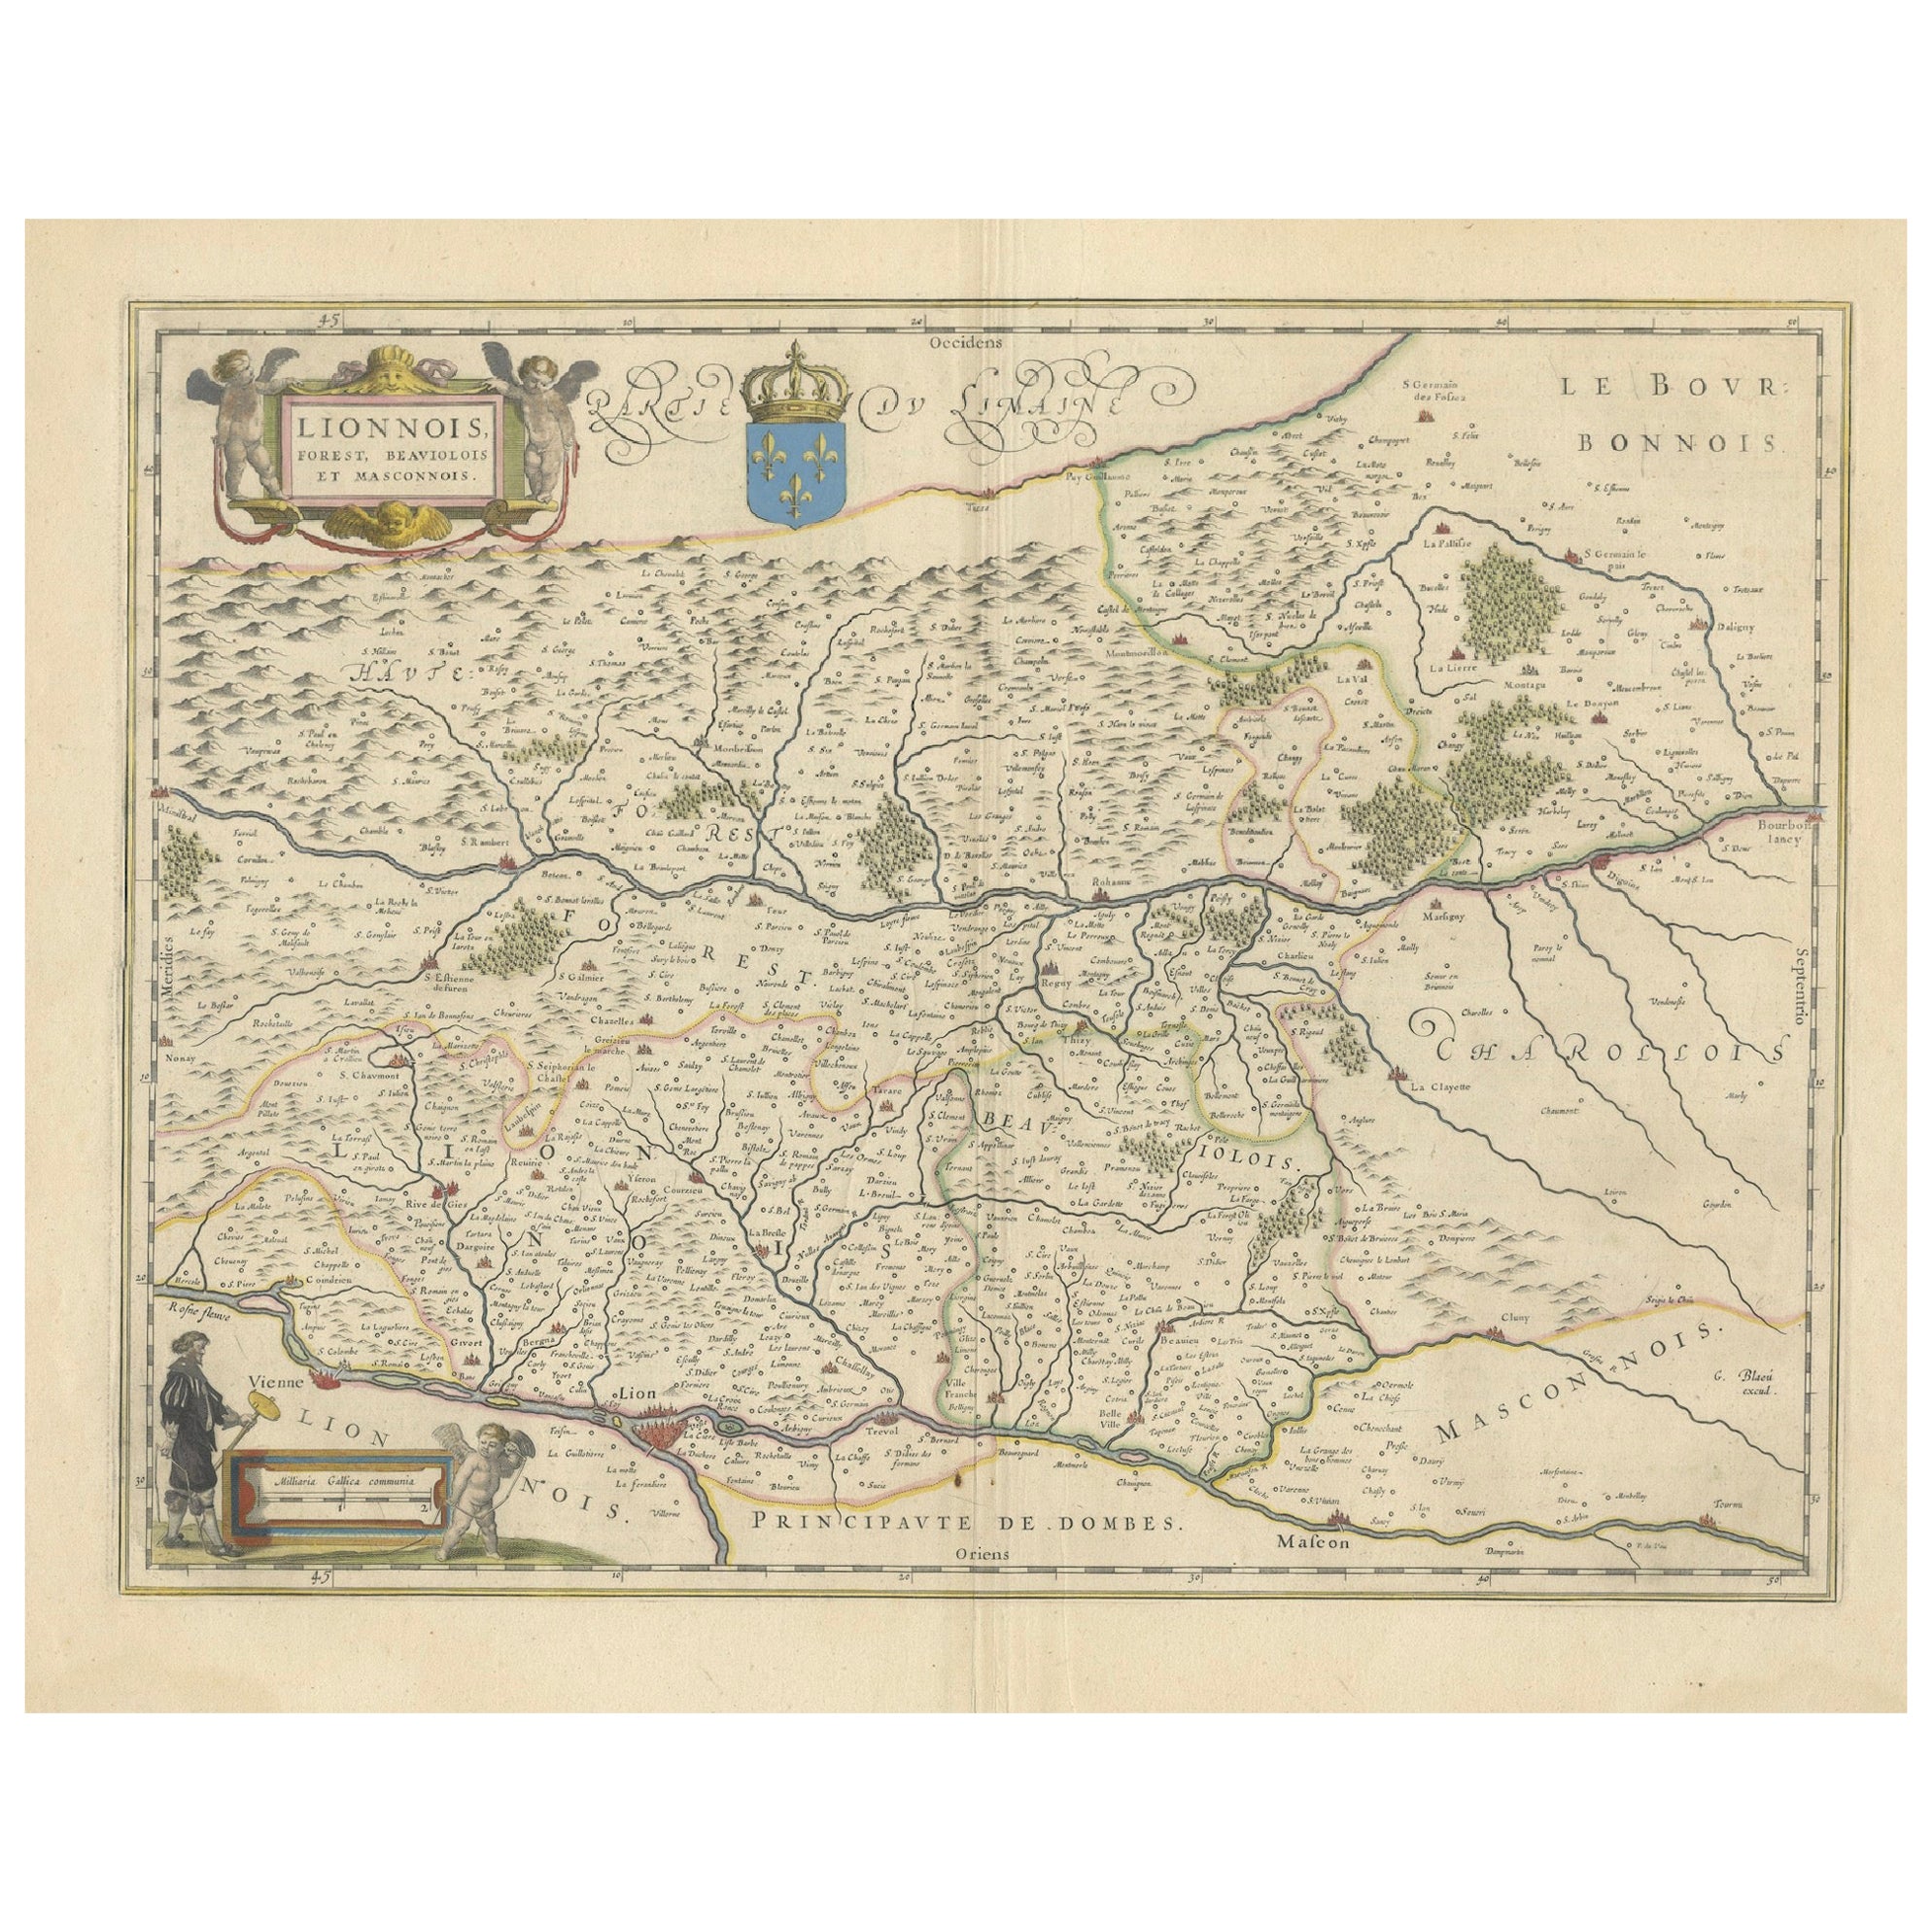 Lyonnais, Beaujolais, Forez, Mâconnais: A 1644 Depiction of France's Provinces For Sale